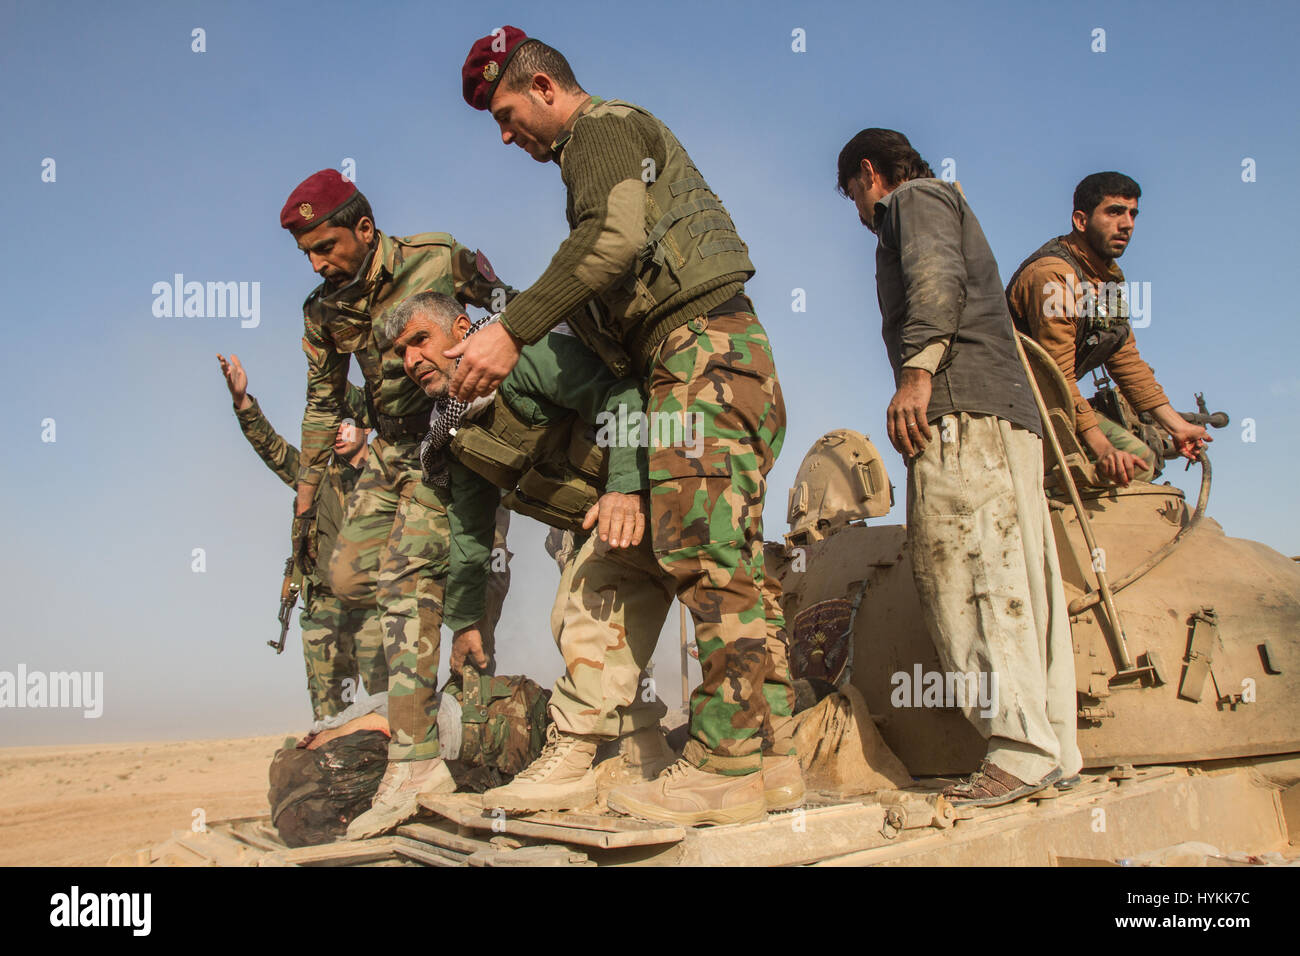 La rimozione di un soldato morto da un T-55 serbatoio la cui testa è esploso da un anti-serbatoio granata lanciata o anti-serbatoio fucile vicino a Khorsabad avanti base operativa. Immagini incredibili che mostra anti ISIS forze nella lotta contro il cosiddetto stato islamico a Mosul sono stati catturati. La serie di foto mostrano i medici trattando i soldati feriti e un suicidio distrutte auto bombardiere. Altre foto mostrano iraniane di gruppi che lavorano sotto forze Peshmerga per dividere il territorio di ISIS. Le immagini sono state prese da Oxford addestrato Jan Husar chi è stato in seguito all'azione. Jan Husar / mediadrumworld.com Foto Stock